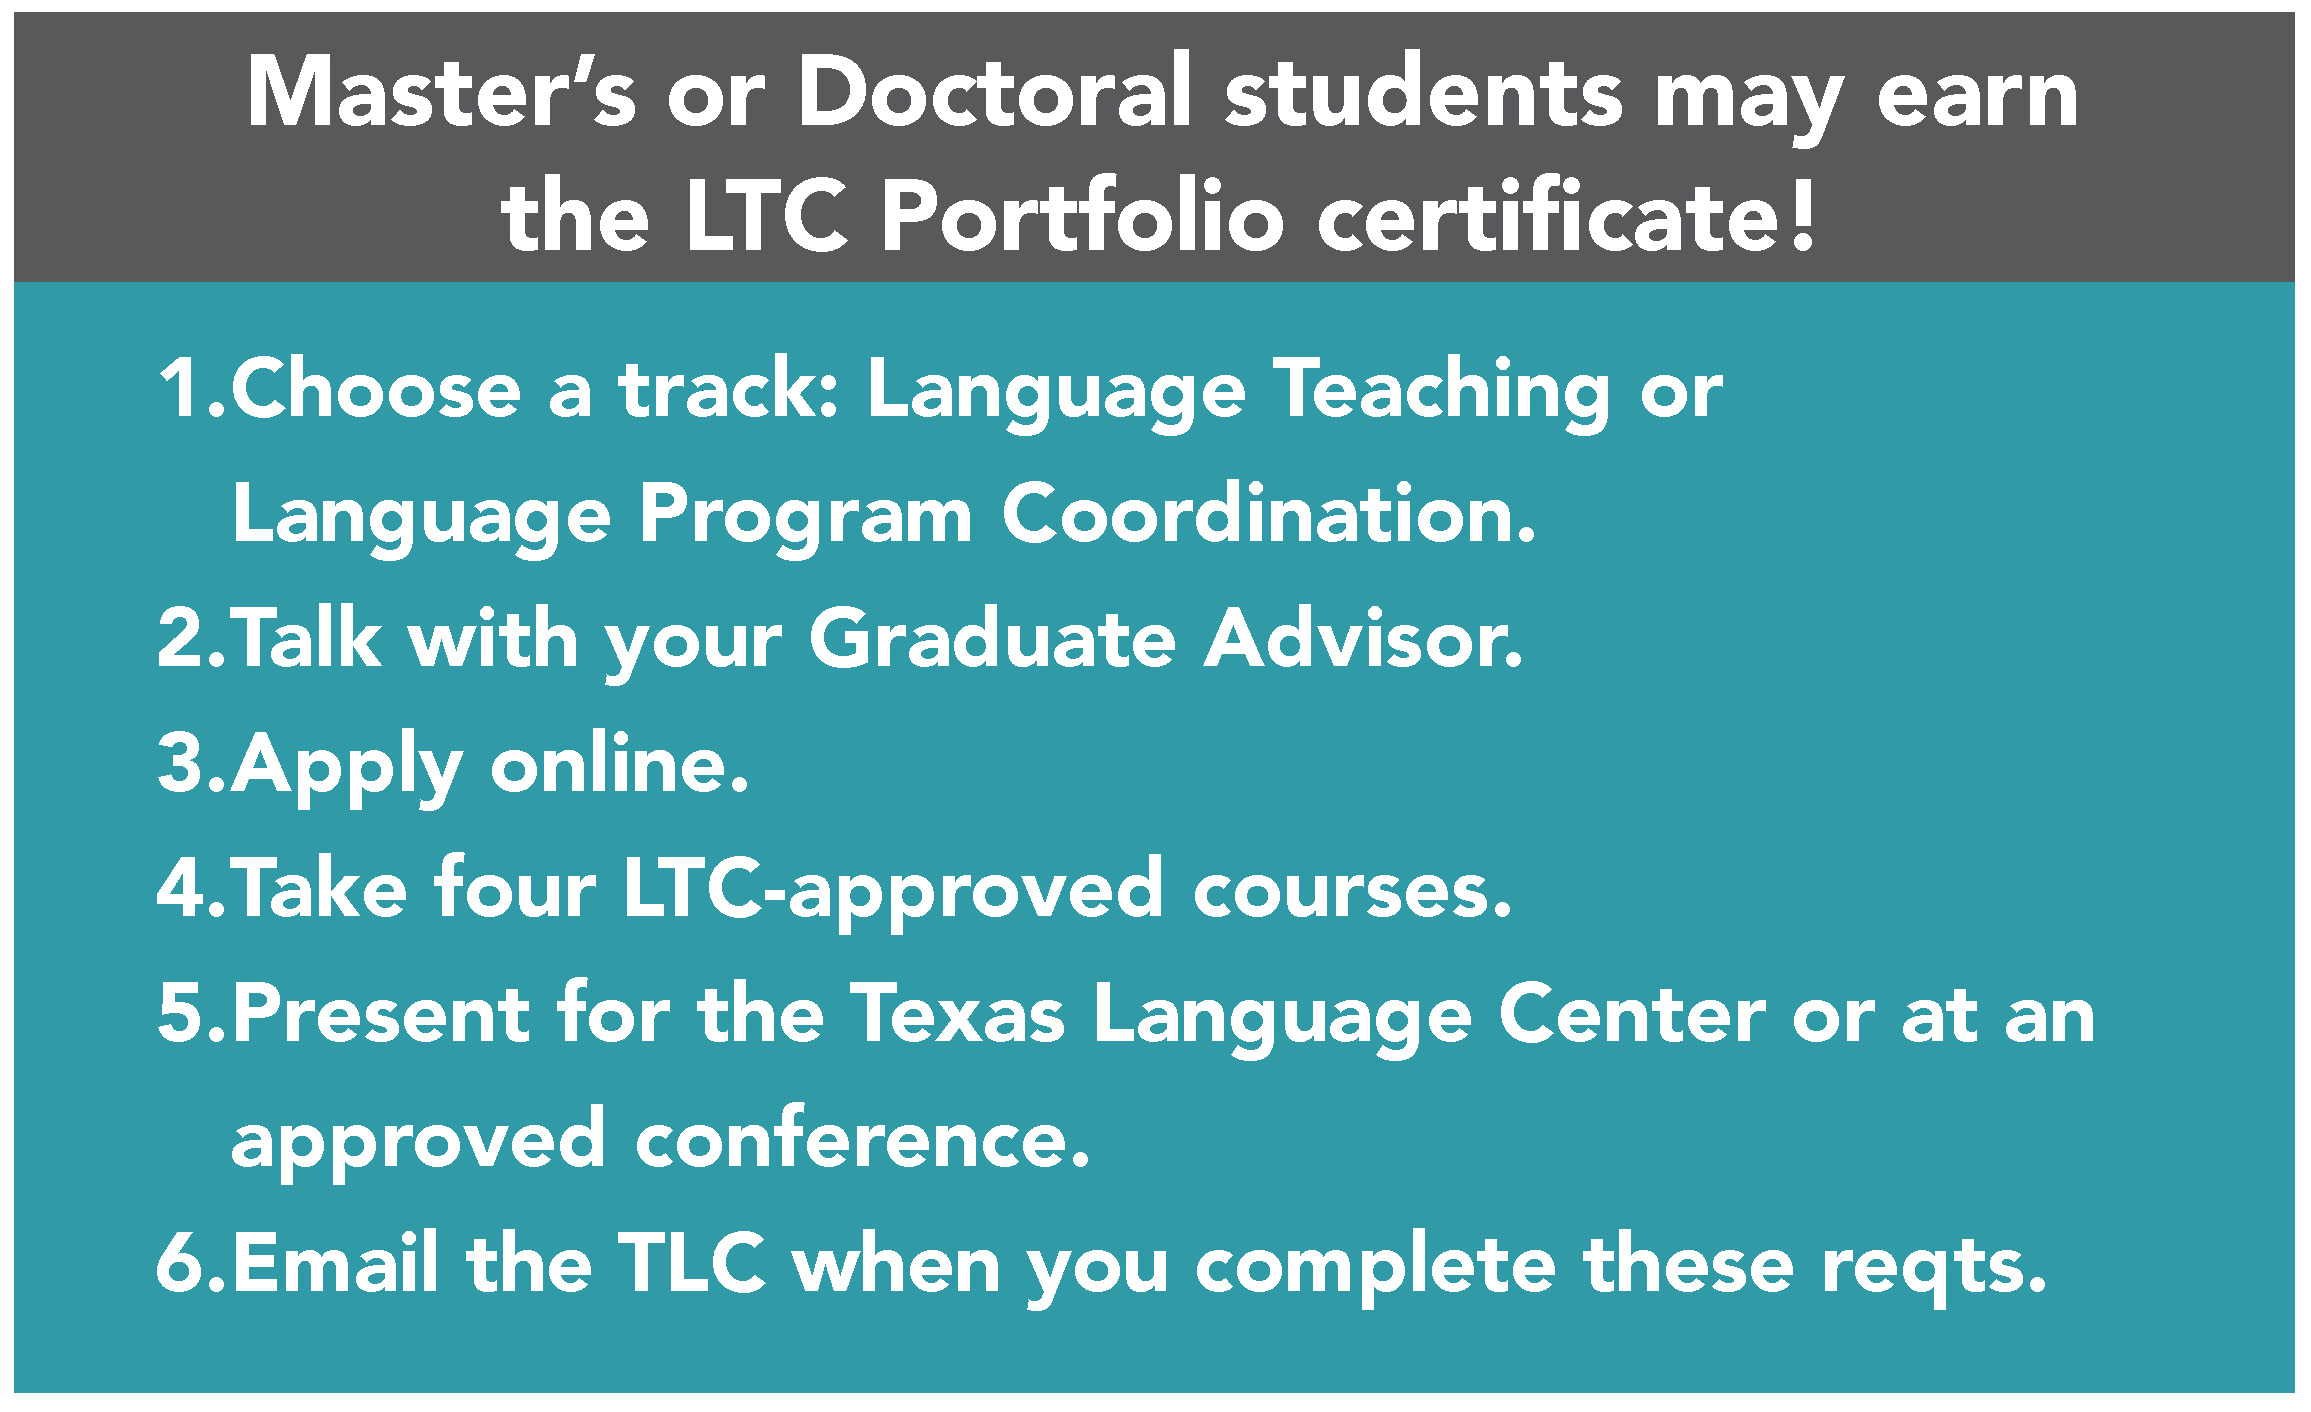 LTC Portfolio requirements